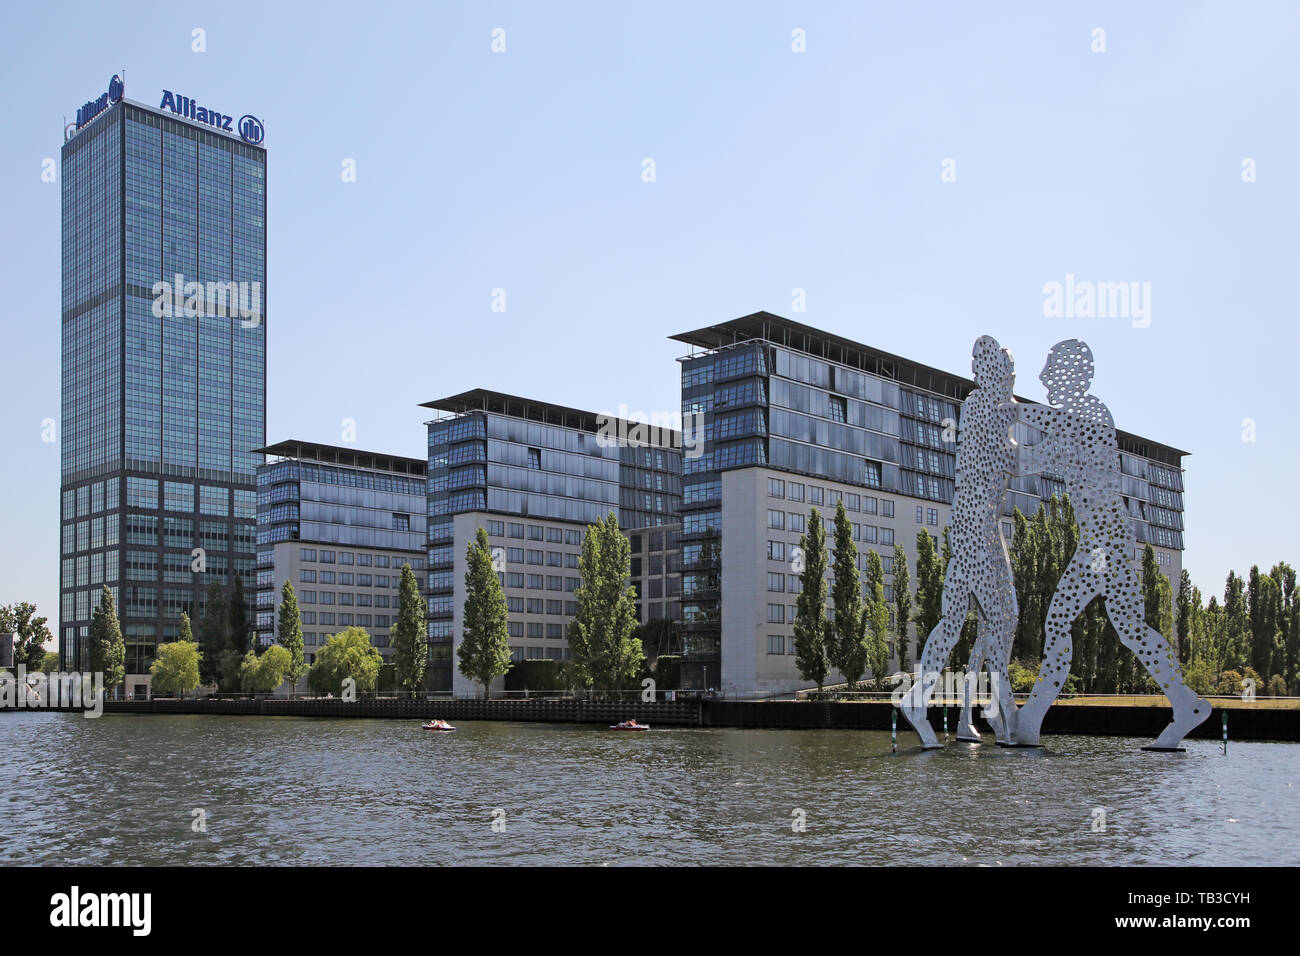 14.07.2018, Berlin, Berlin, Germania - complesso edilizio Treptowers con la molecola di scultura di uomini. 00S180714D855CAROEX.JPG [modello di rilascio: non APP Foto Stock